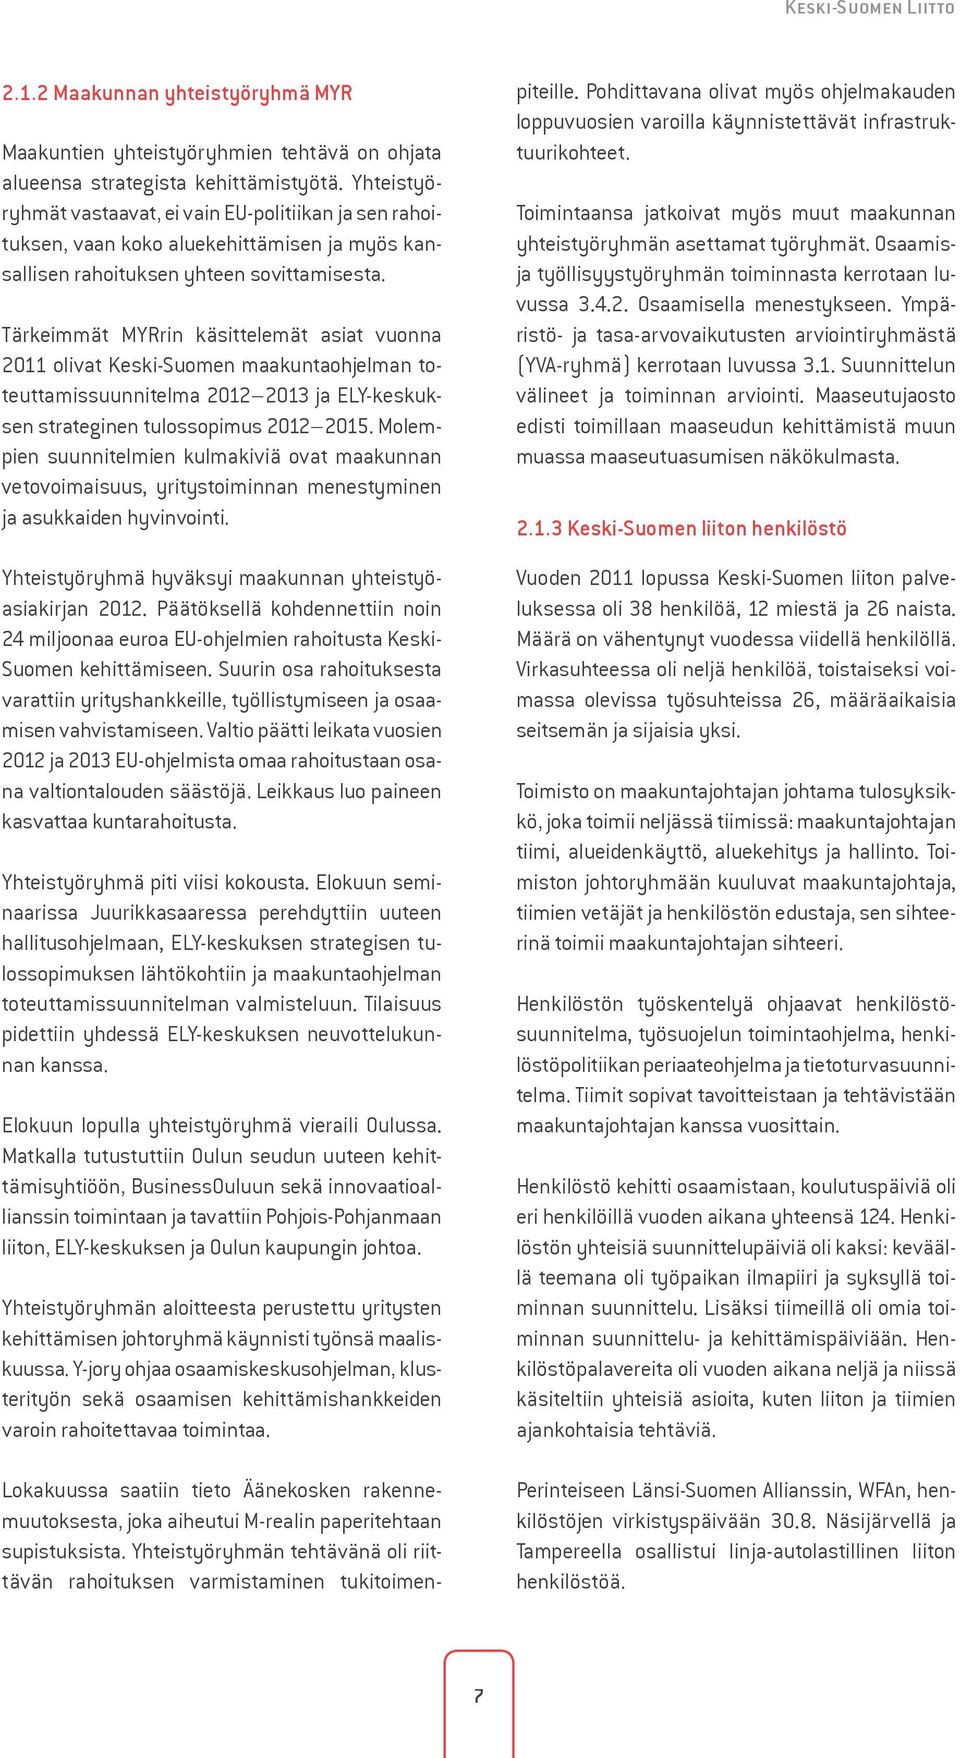 Tärkeimmät MYRrin käsittelemät asiat vuonna 2011 olivat Keski-Suomen maakuntaohjelman toteuttamissuunnitelma 2012 2013 ja ELY-keskuksen strateginen tulossopimus 2012 2015.